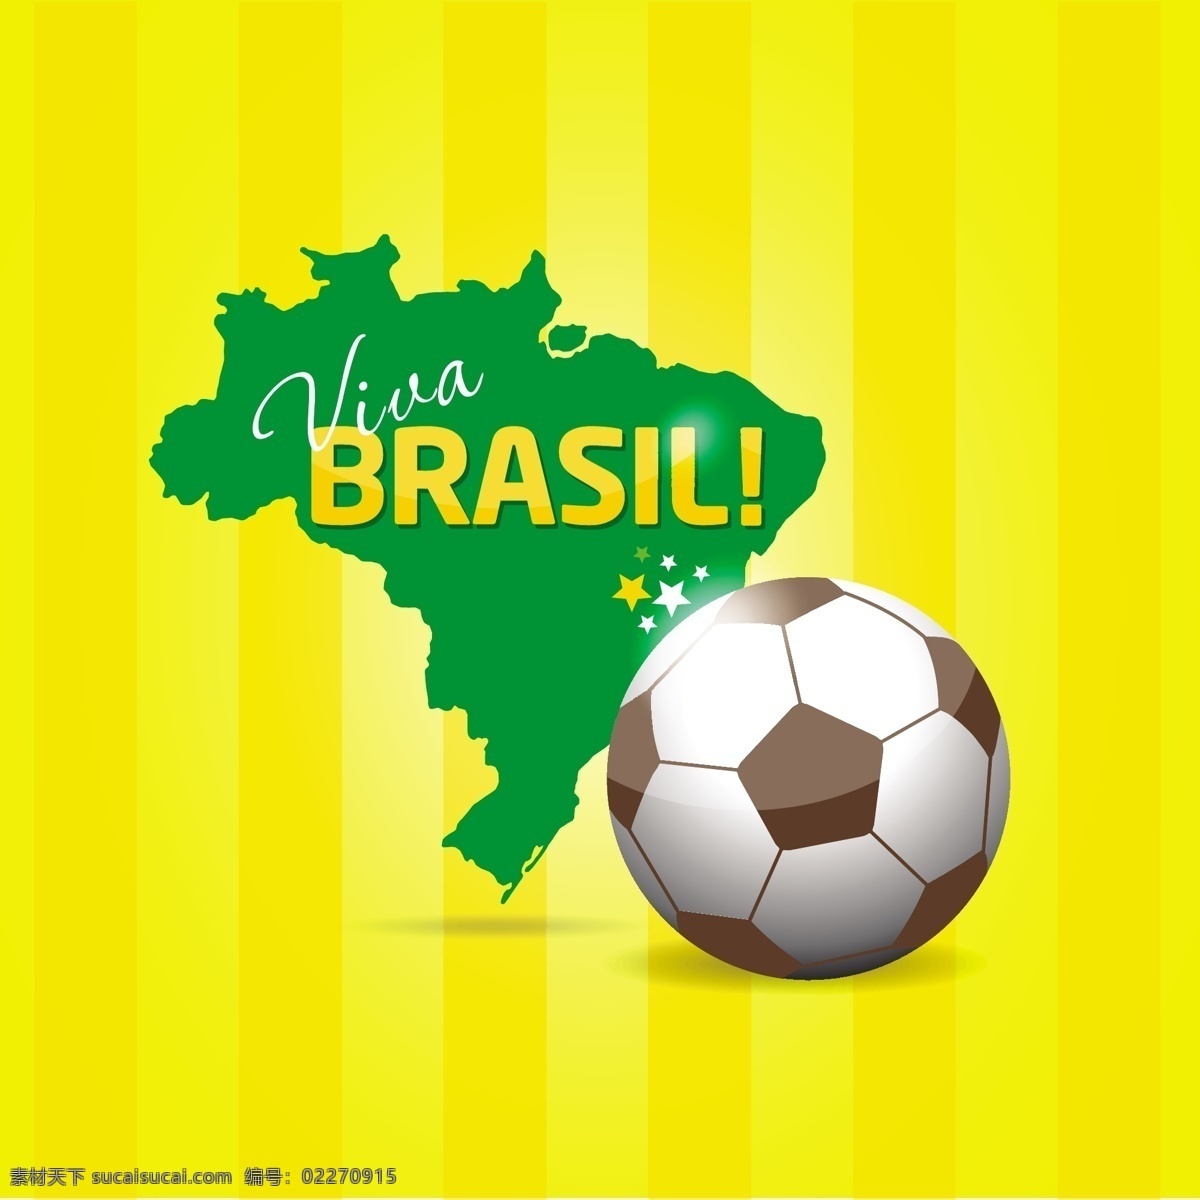 巴西 地图 足球 巴西地图 条状背景 背景 黄色